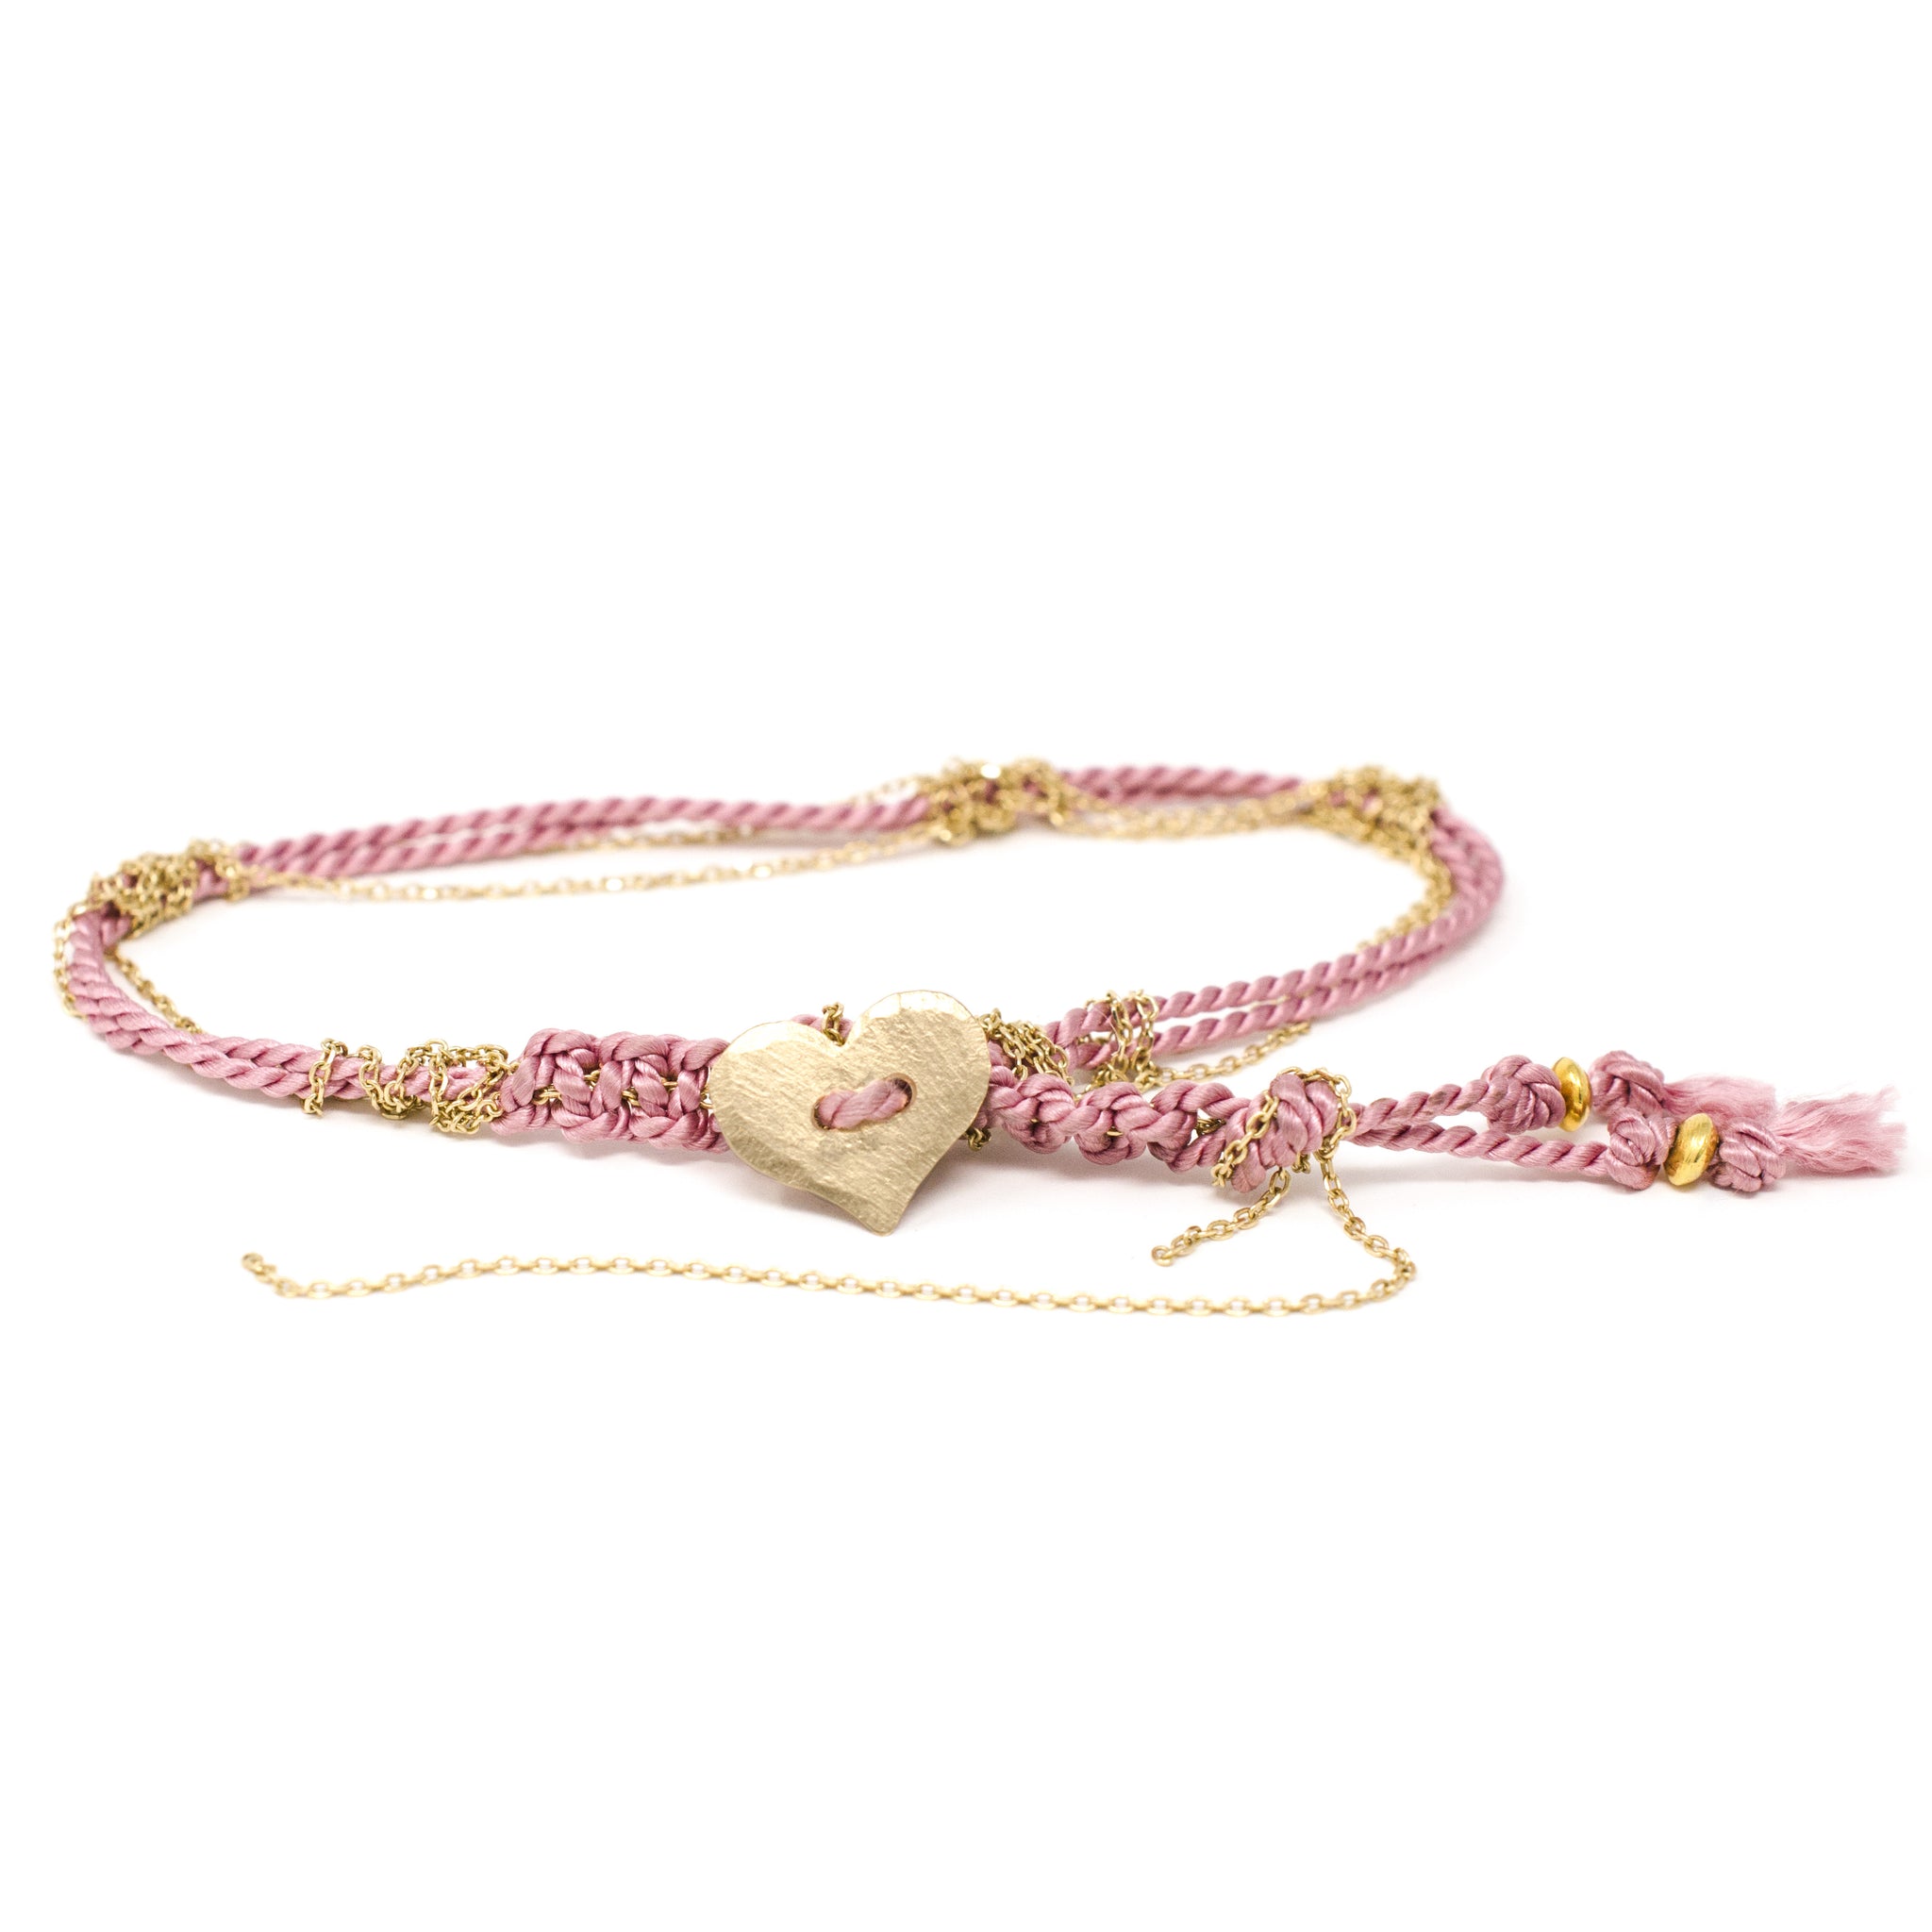 Adult Friendship Bracelet Pink - Jennifer Dawes Design